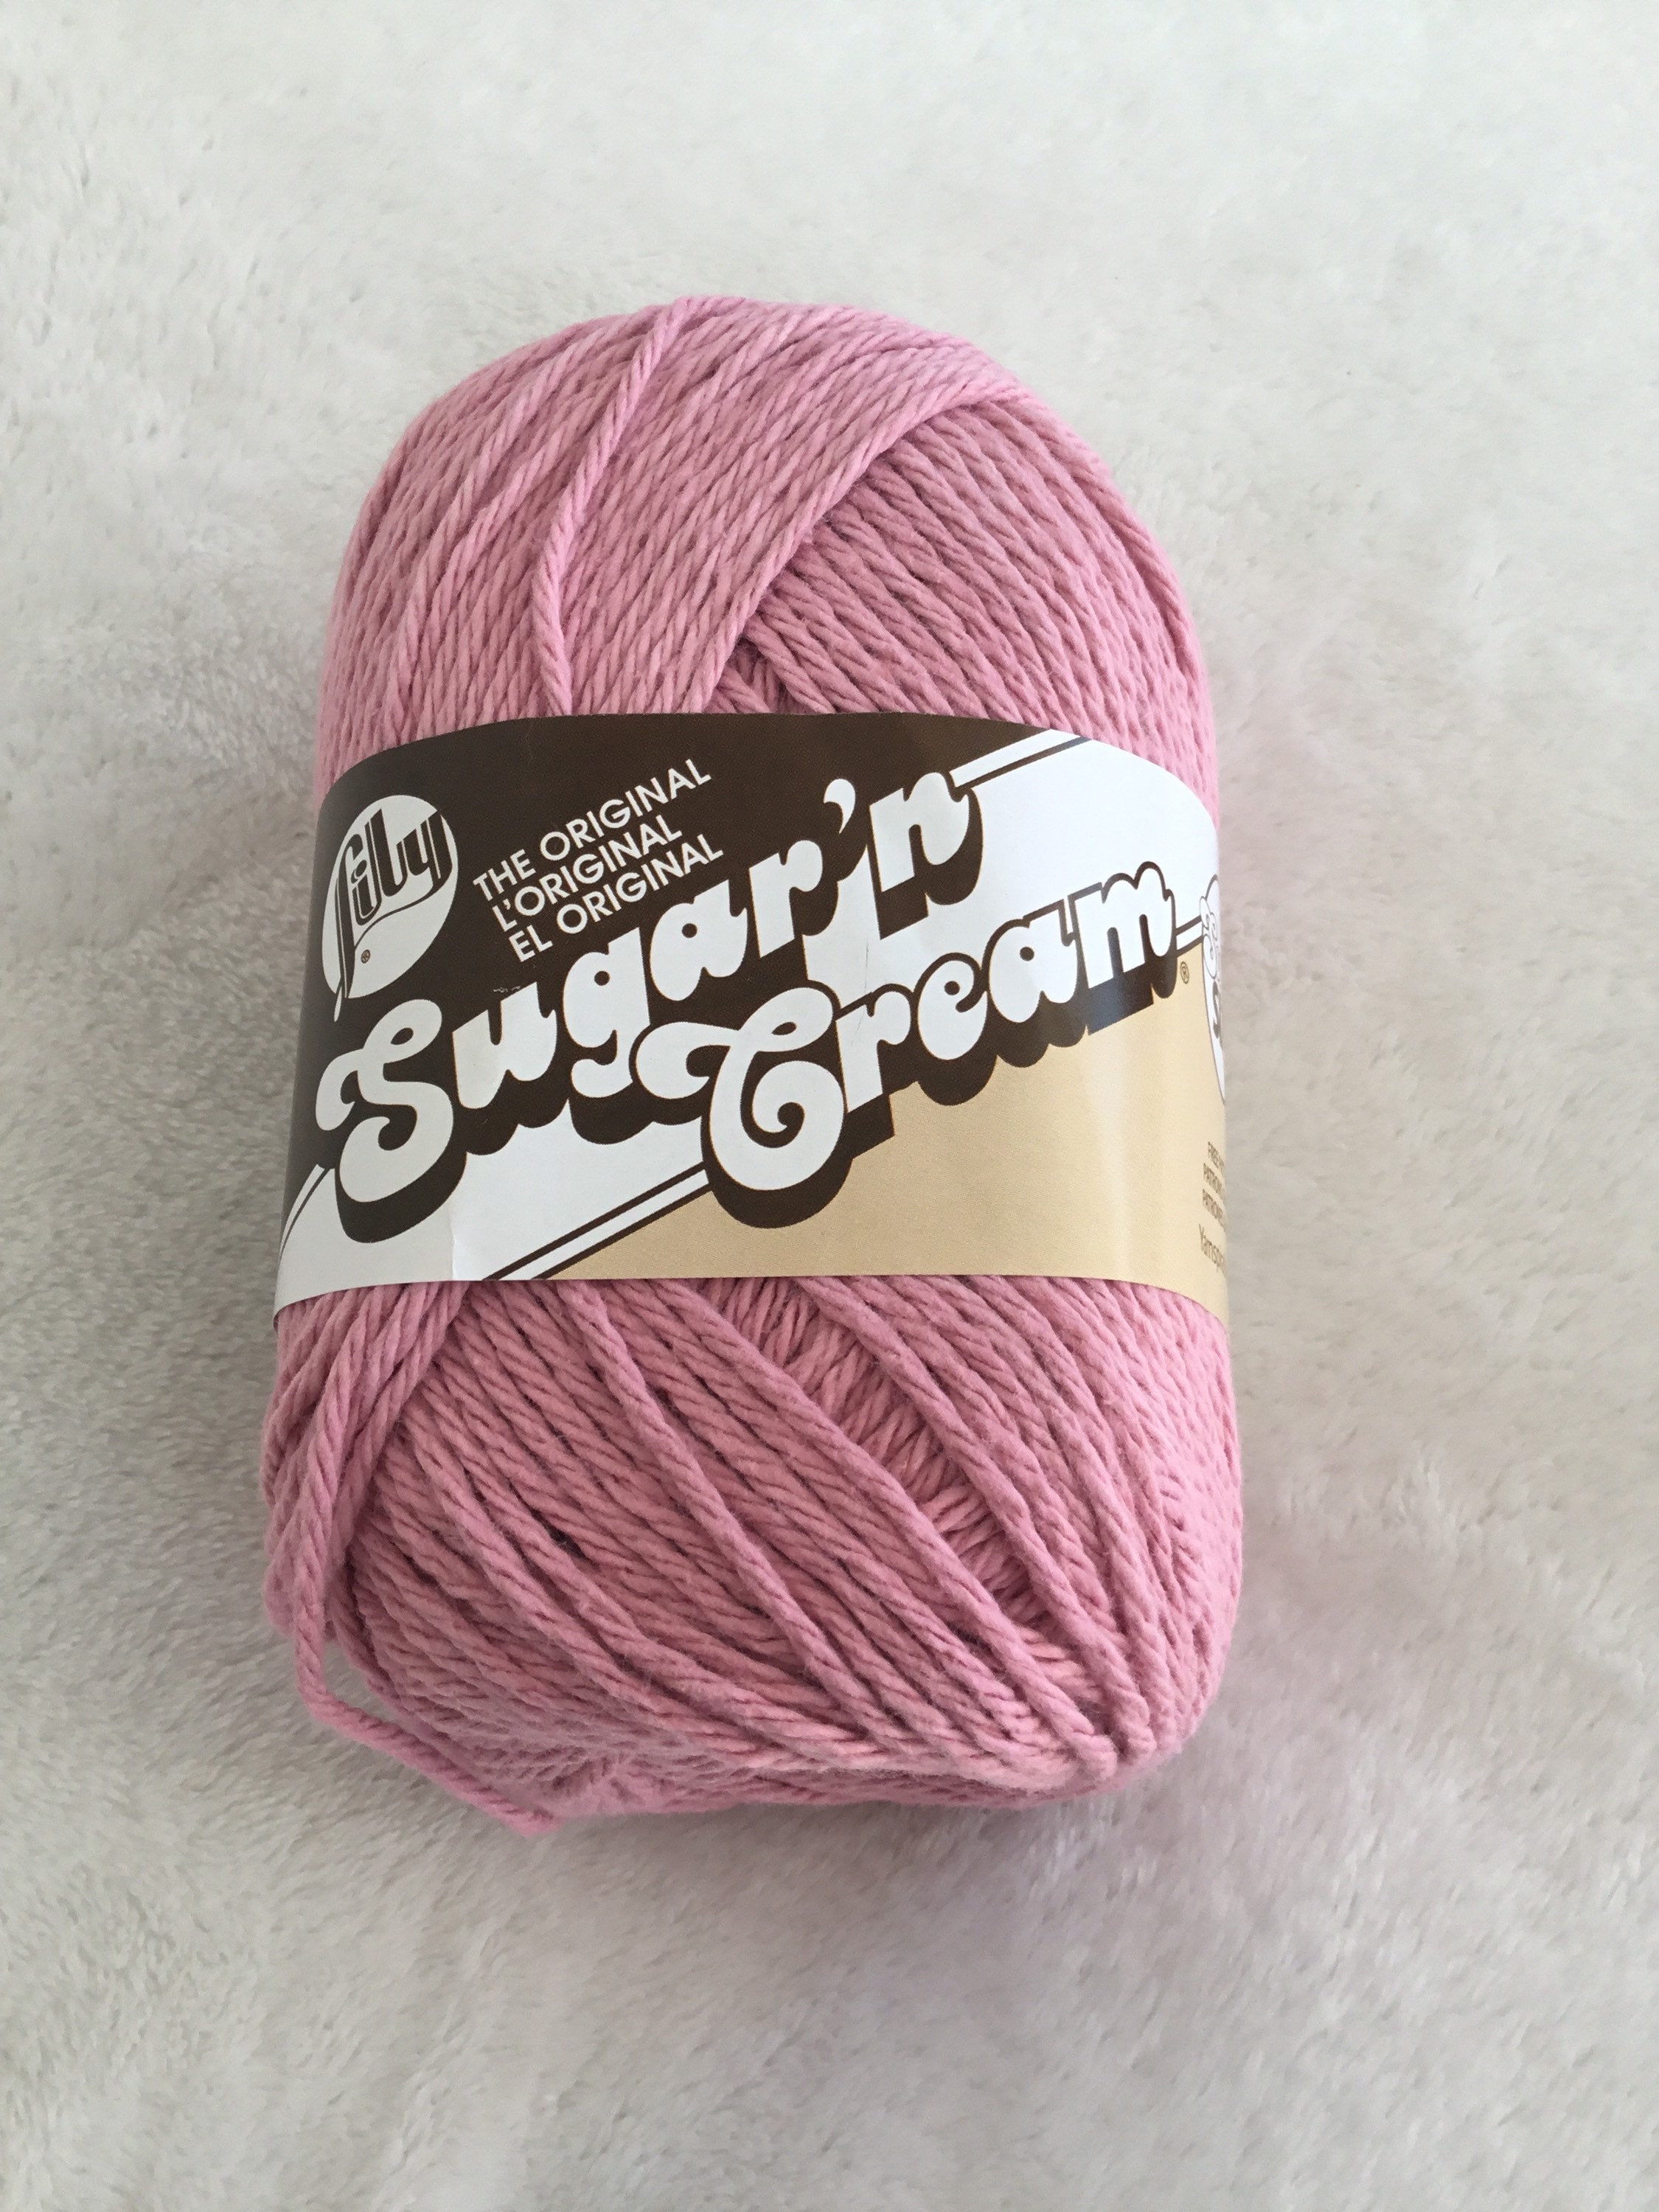 Cotton Knitting yarn - Lily Sugar'n Cream in Australia - American